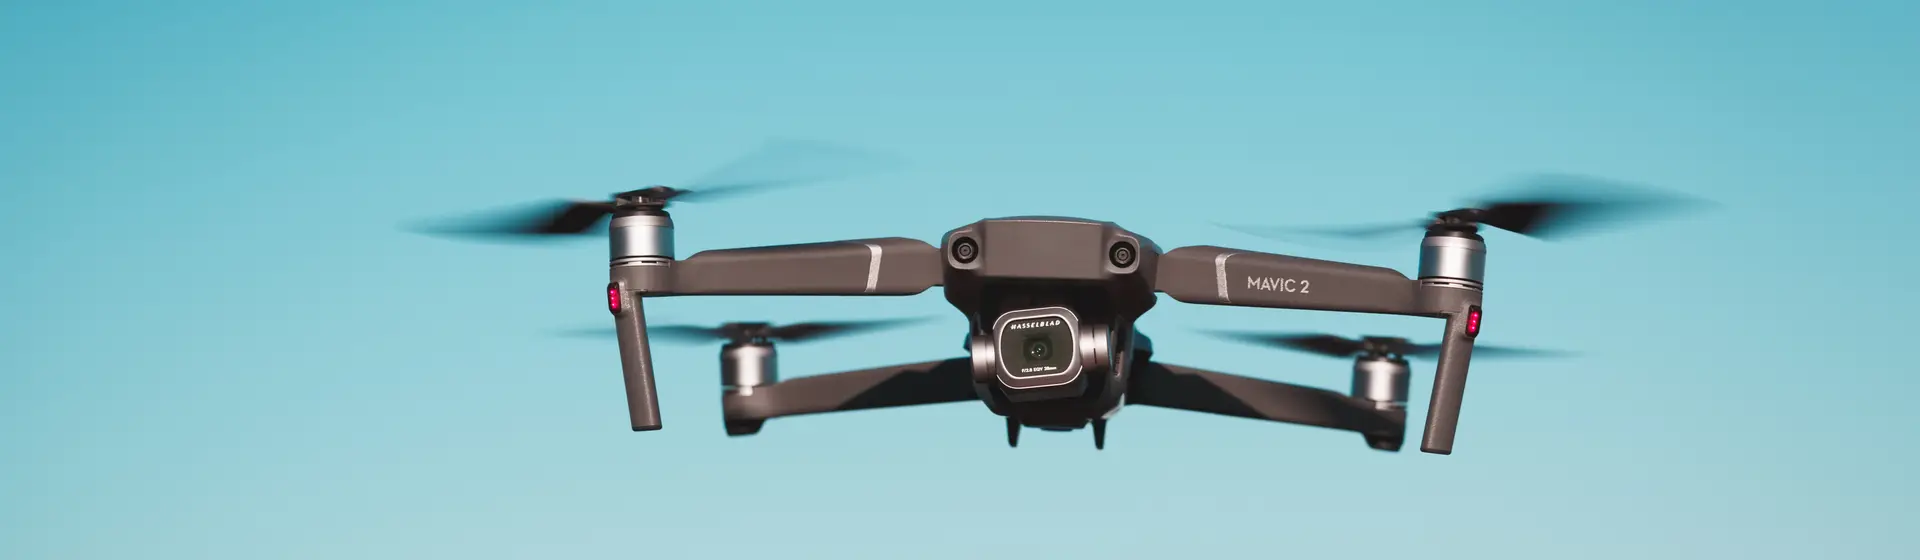 Drone com câmera: veja 10 opções e dicas para comprar